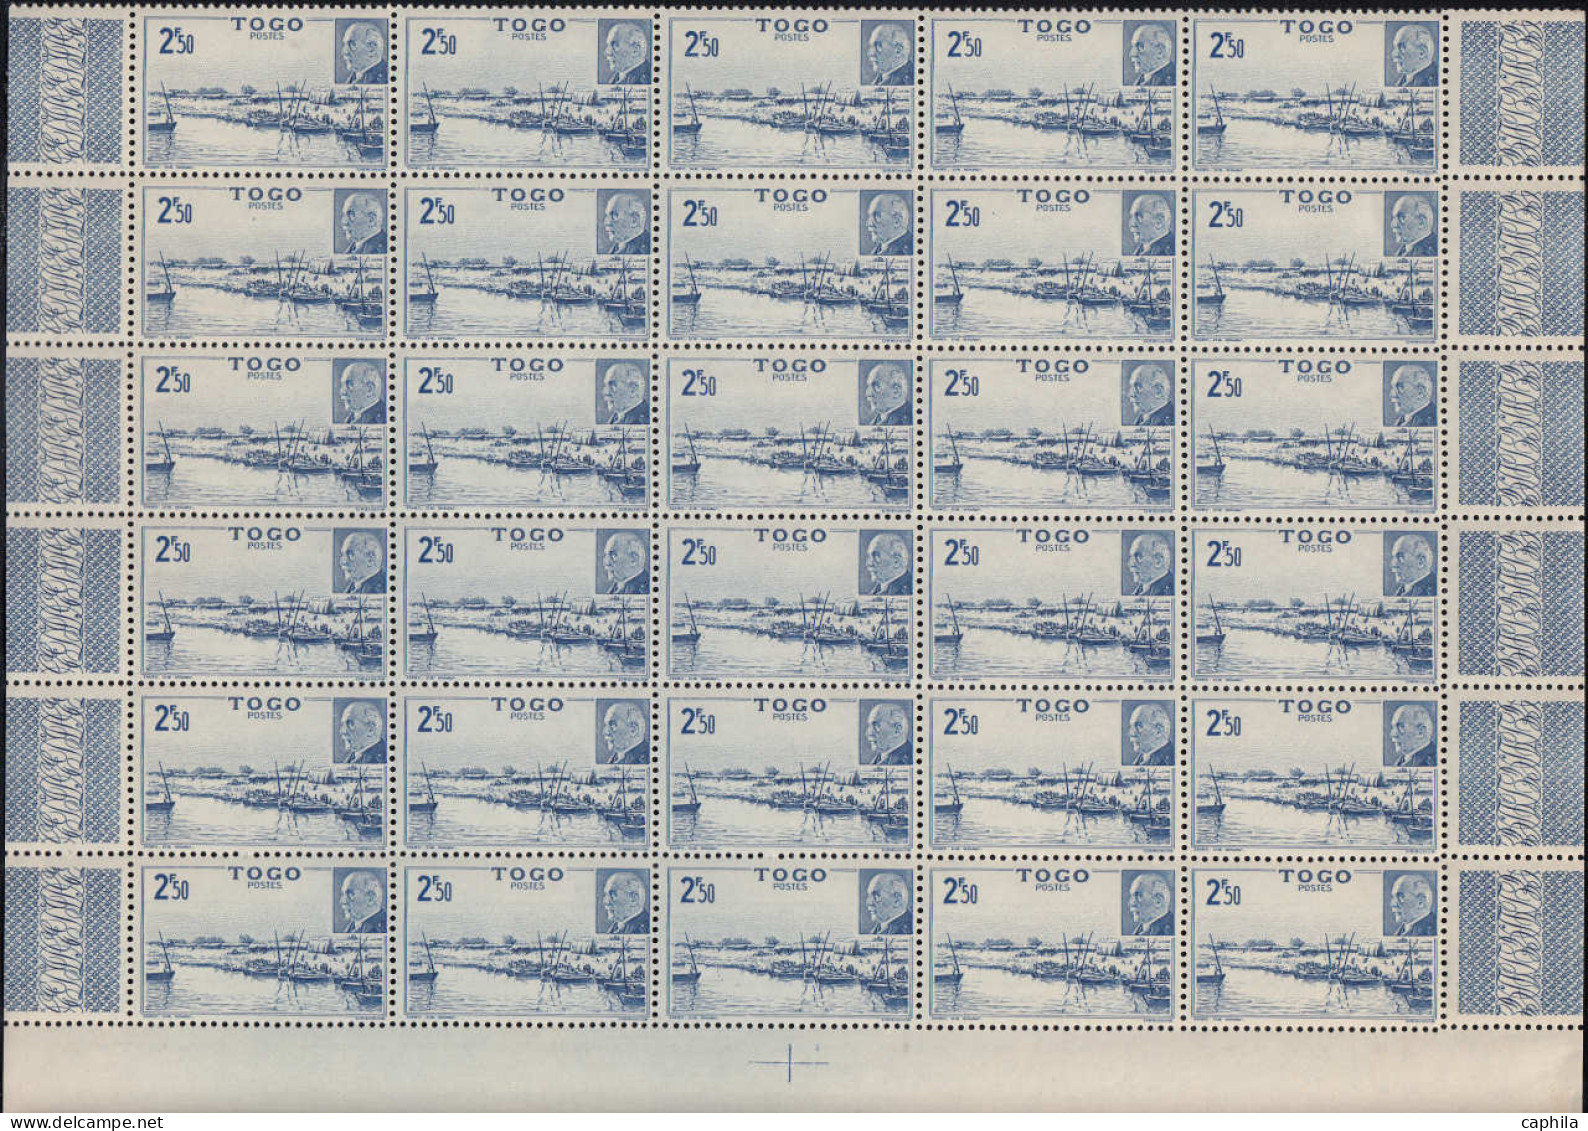 COLONIES SERIES Poste ** - 1944, Pétain en panneaux de 30 (sauf AEF - Madagascar - Océanie) souvent 2 valeurs par bloc a